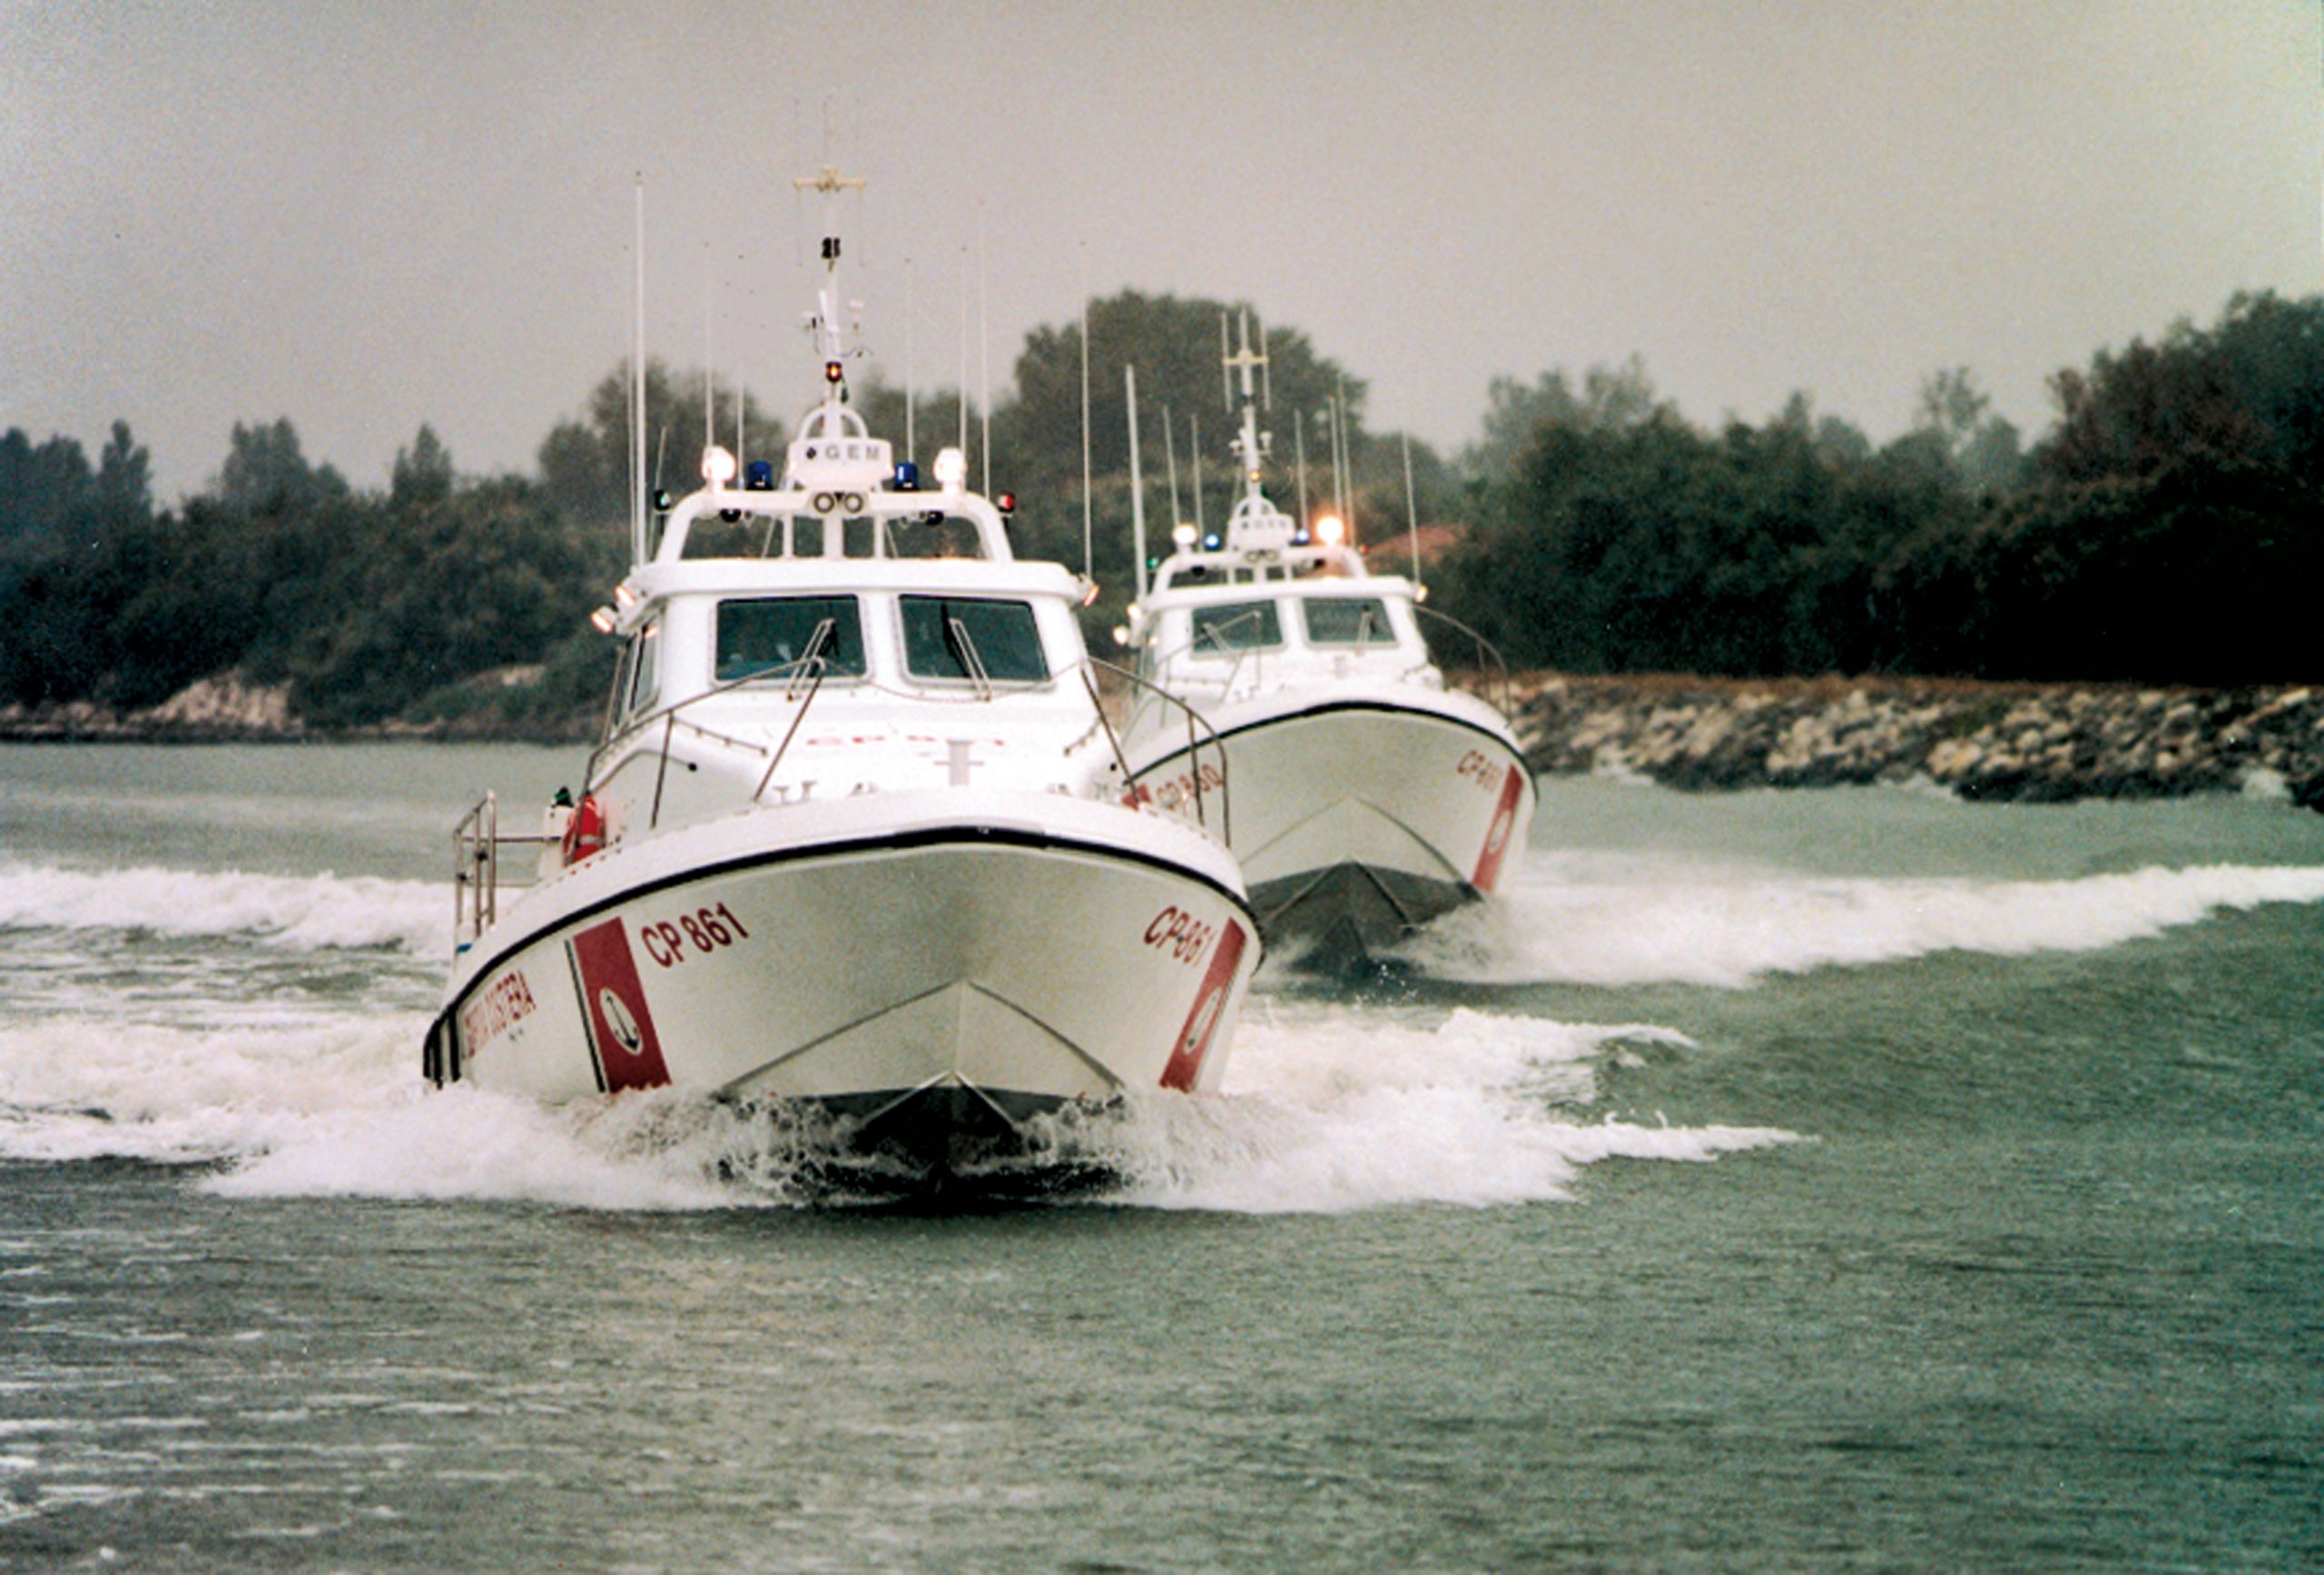 SRV800, Search and Rescue, Cantiere Navale Vittoria